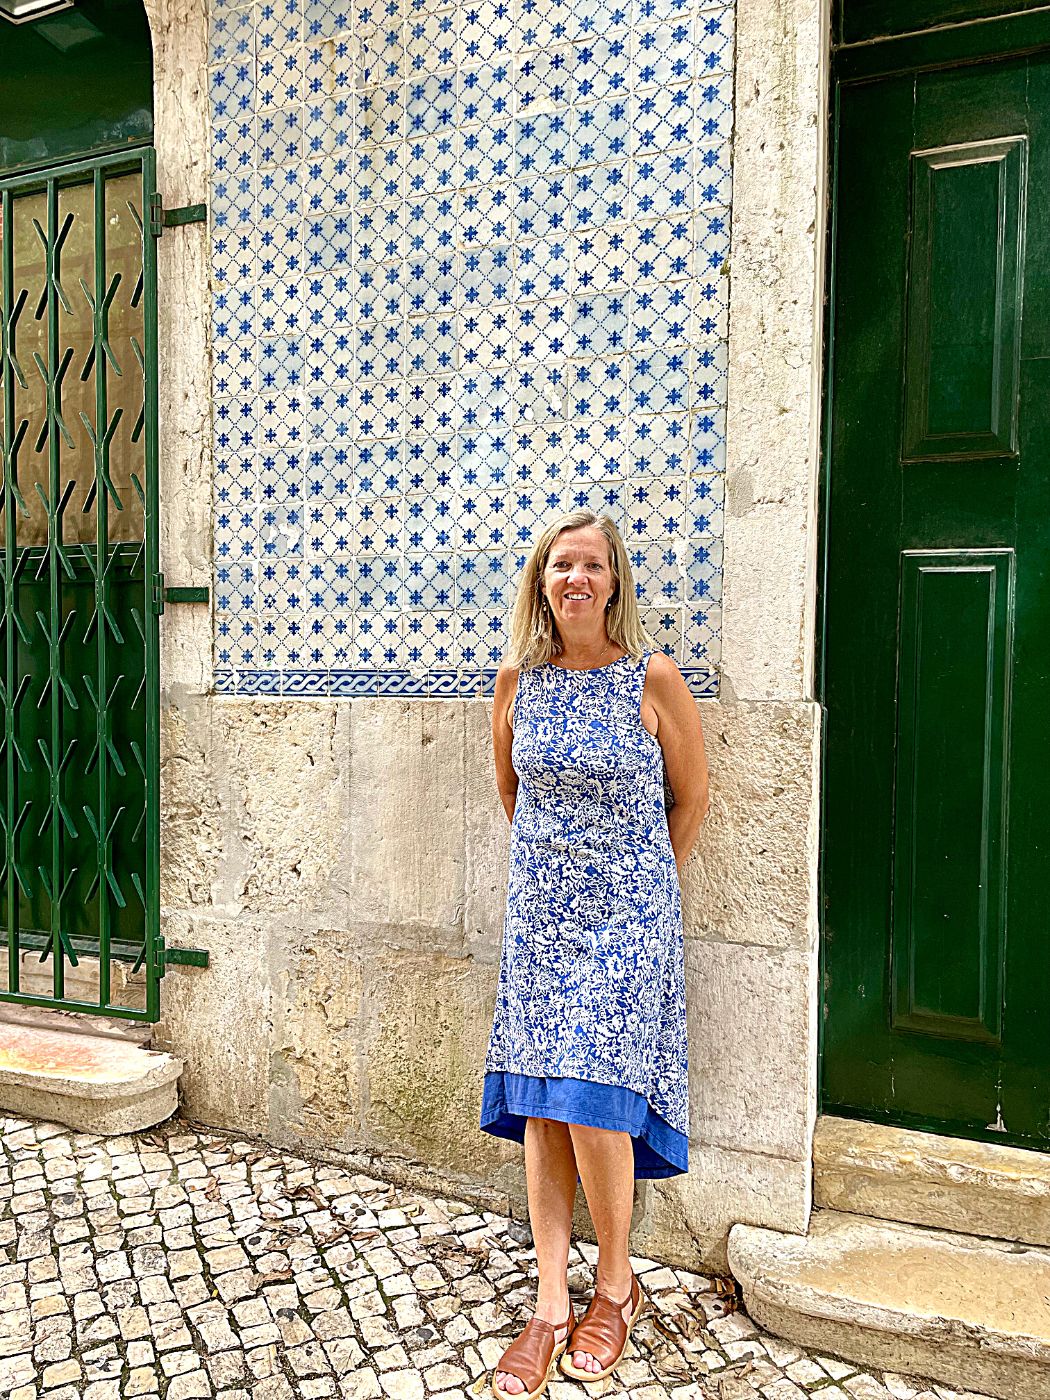 Alfama Blue and White Azulejos building facade Rua de Santa Cruz do Castelo Lisbon Portugal